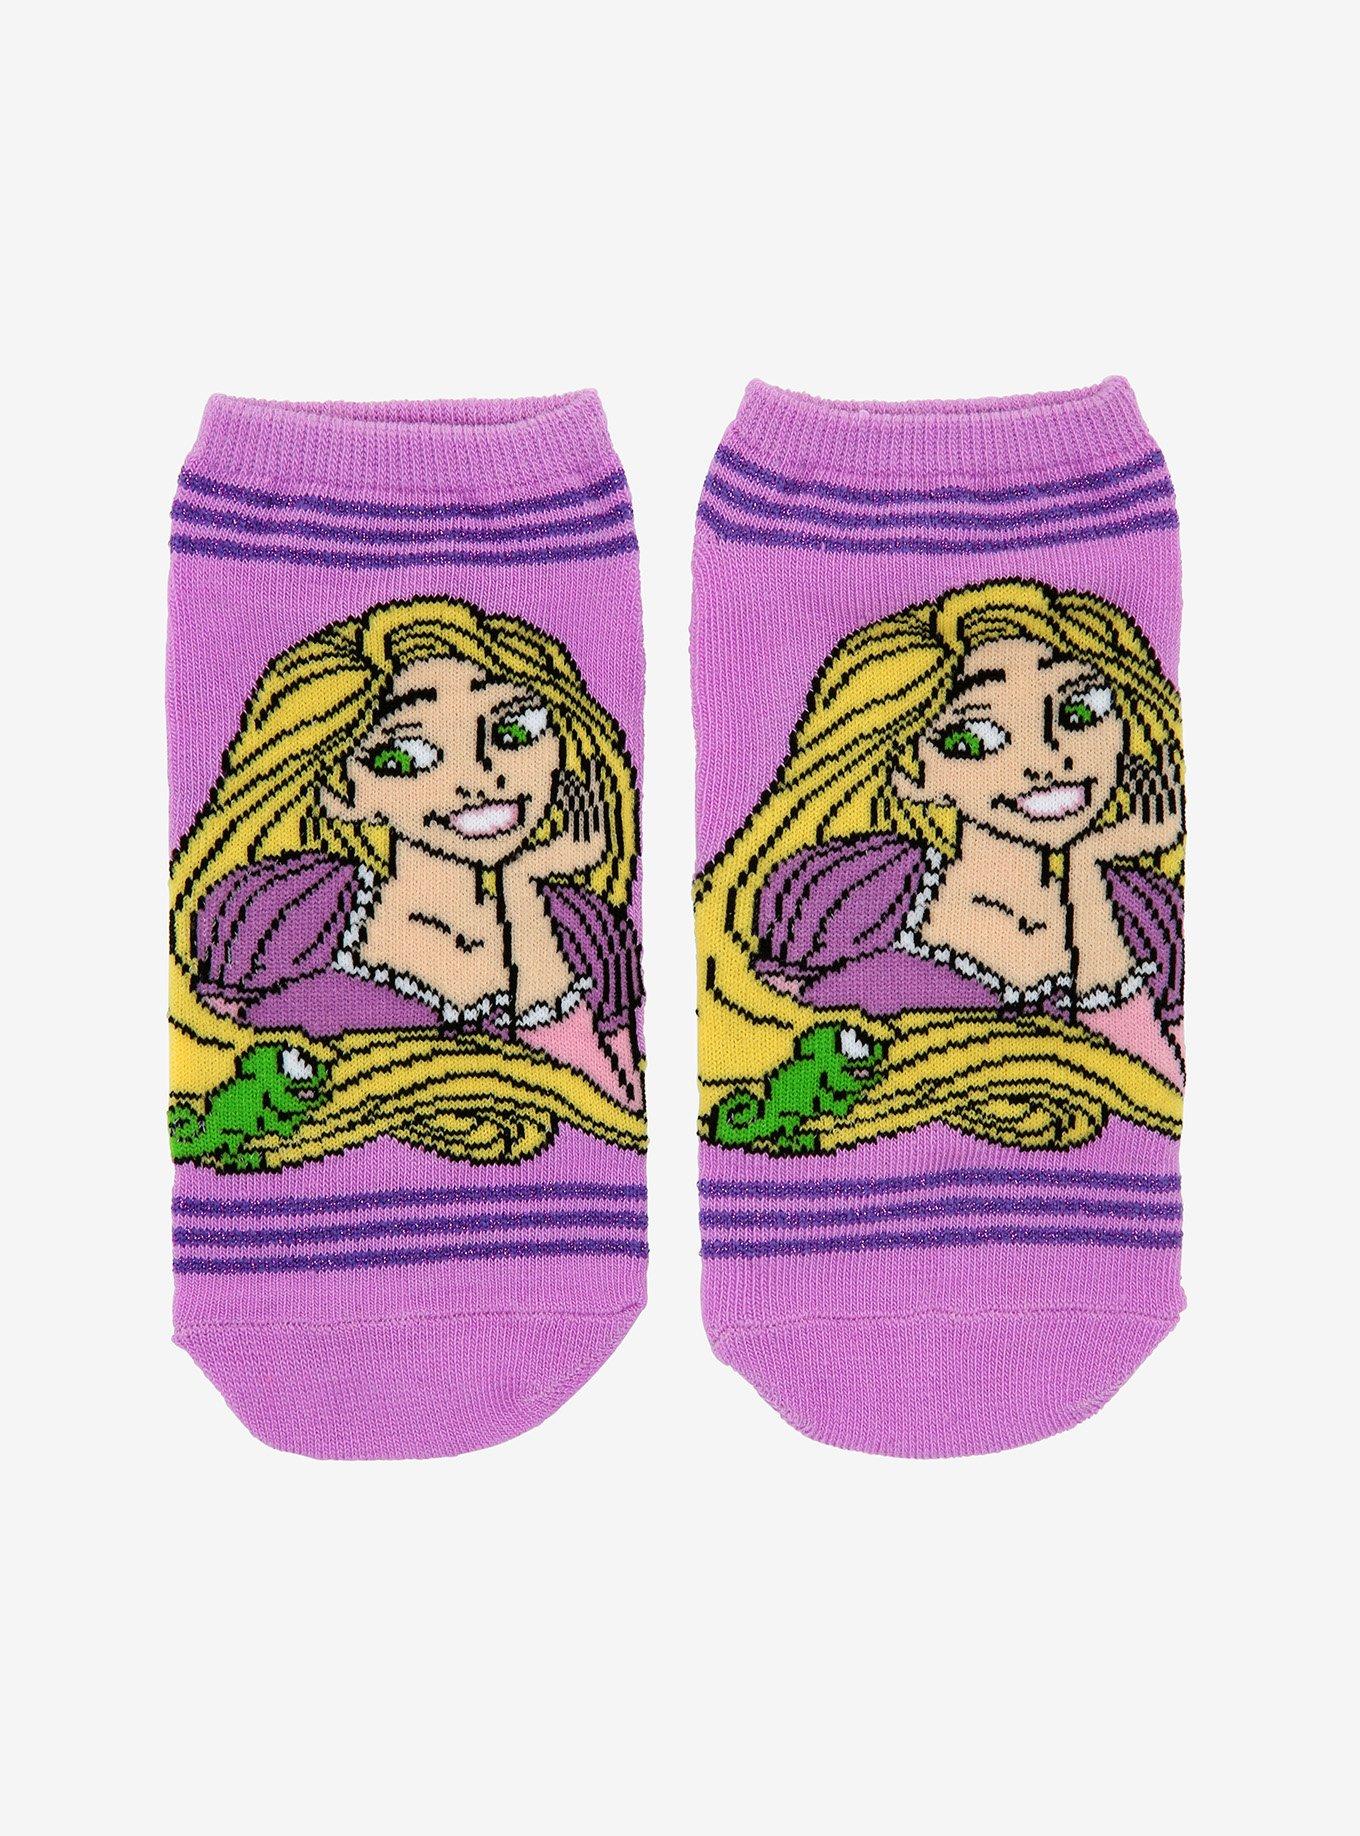 Disney Tangled Rapunzel & Pascal No-Show Socks, , hi-res